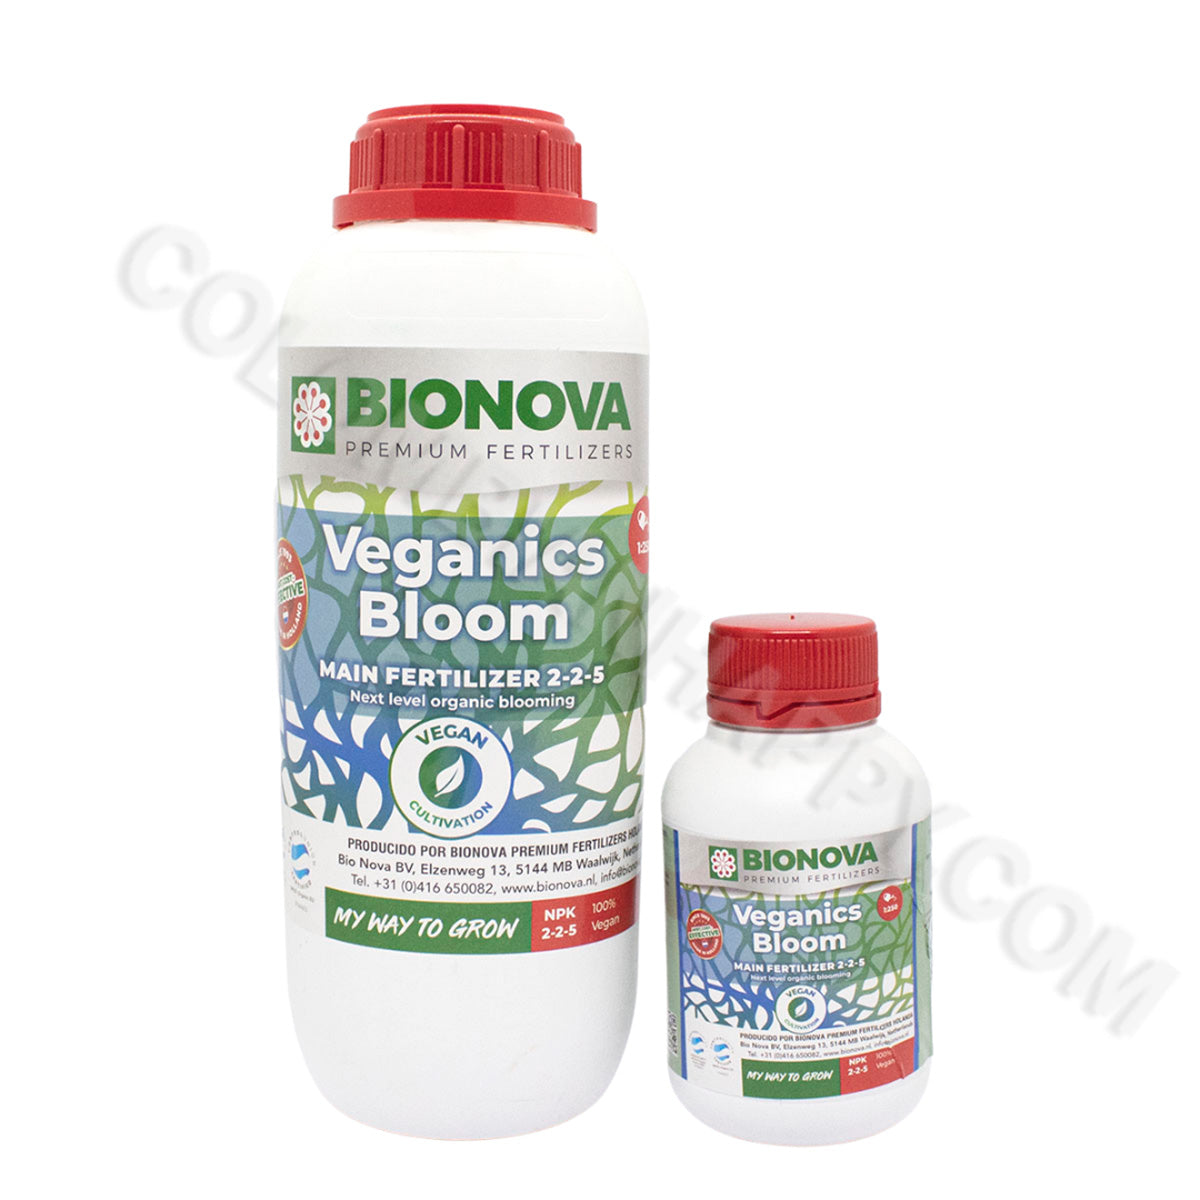 Veganics Bloom Bionova